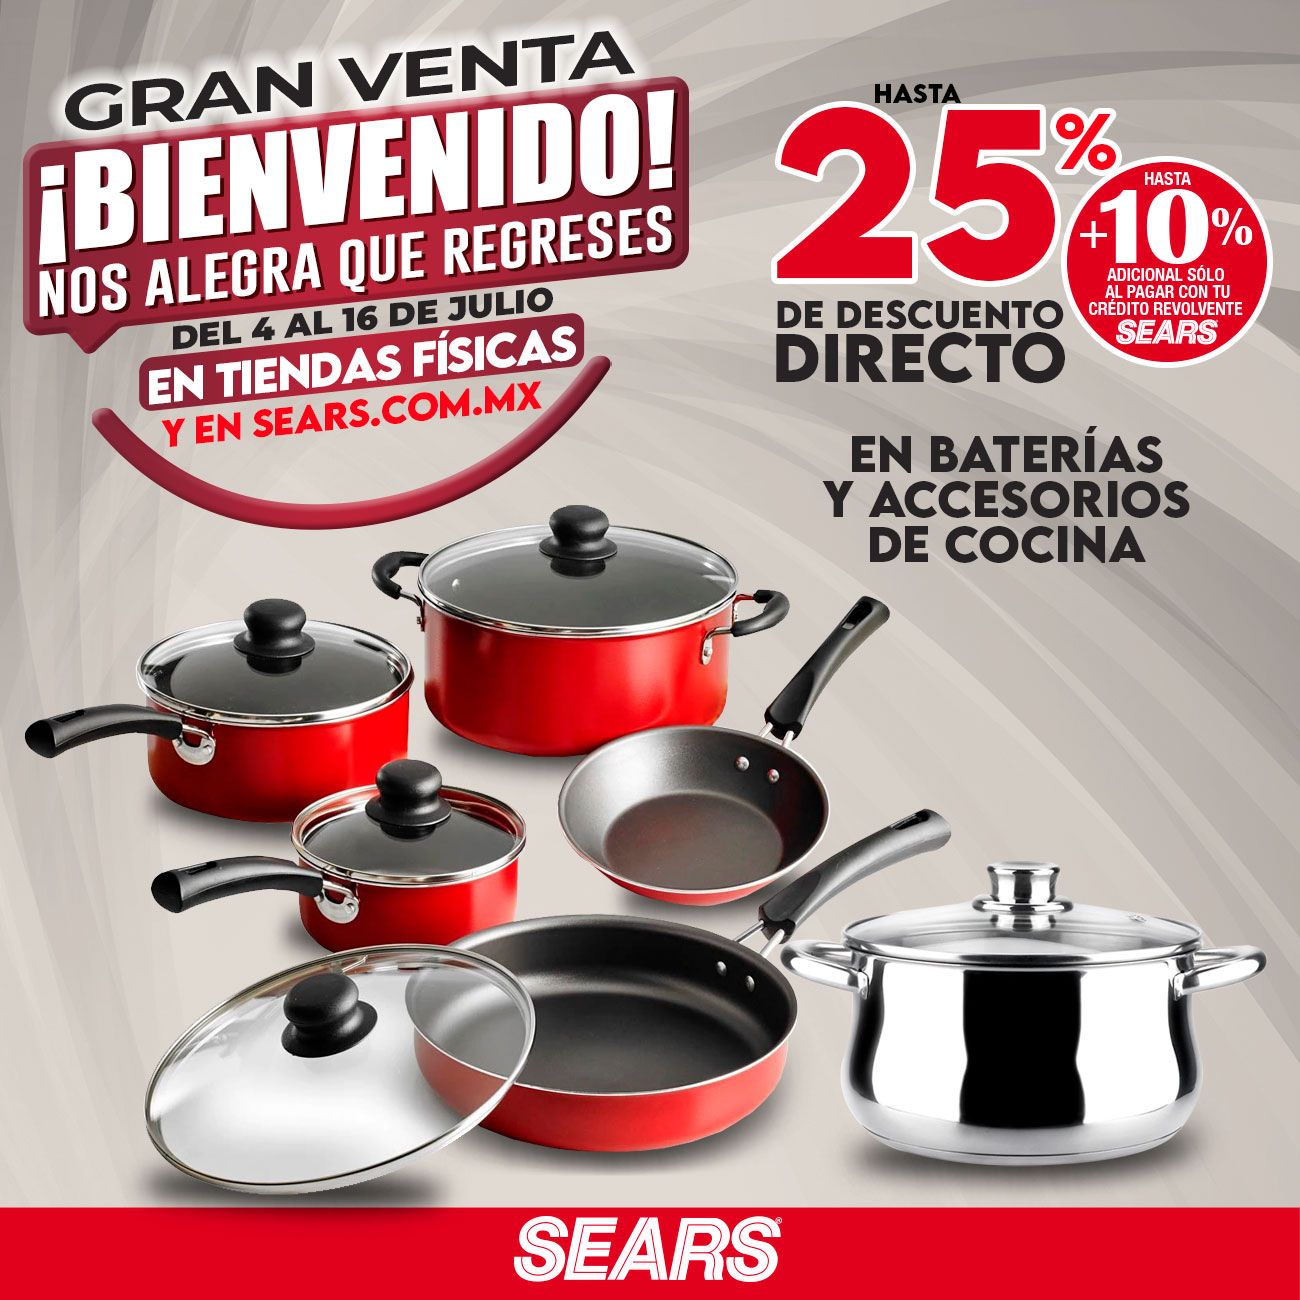 Sears México on Twitter: "Disfruta nuestros en las más reconocidas marcas de baterías de cocina. Da clic y descúbrelo ✨👉 https://t.co/NXMf7575rx Vigencia del 4 al 16 julio 2020. Consulta